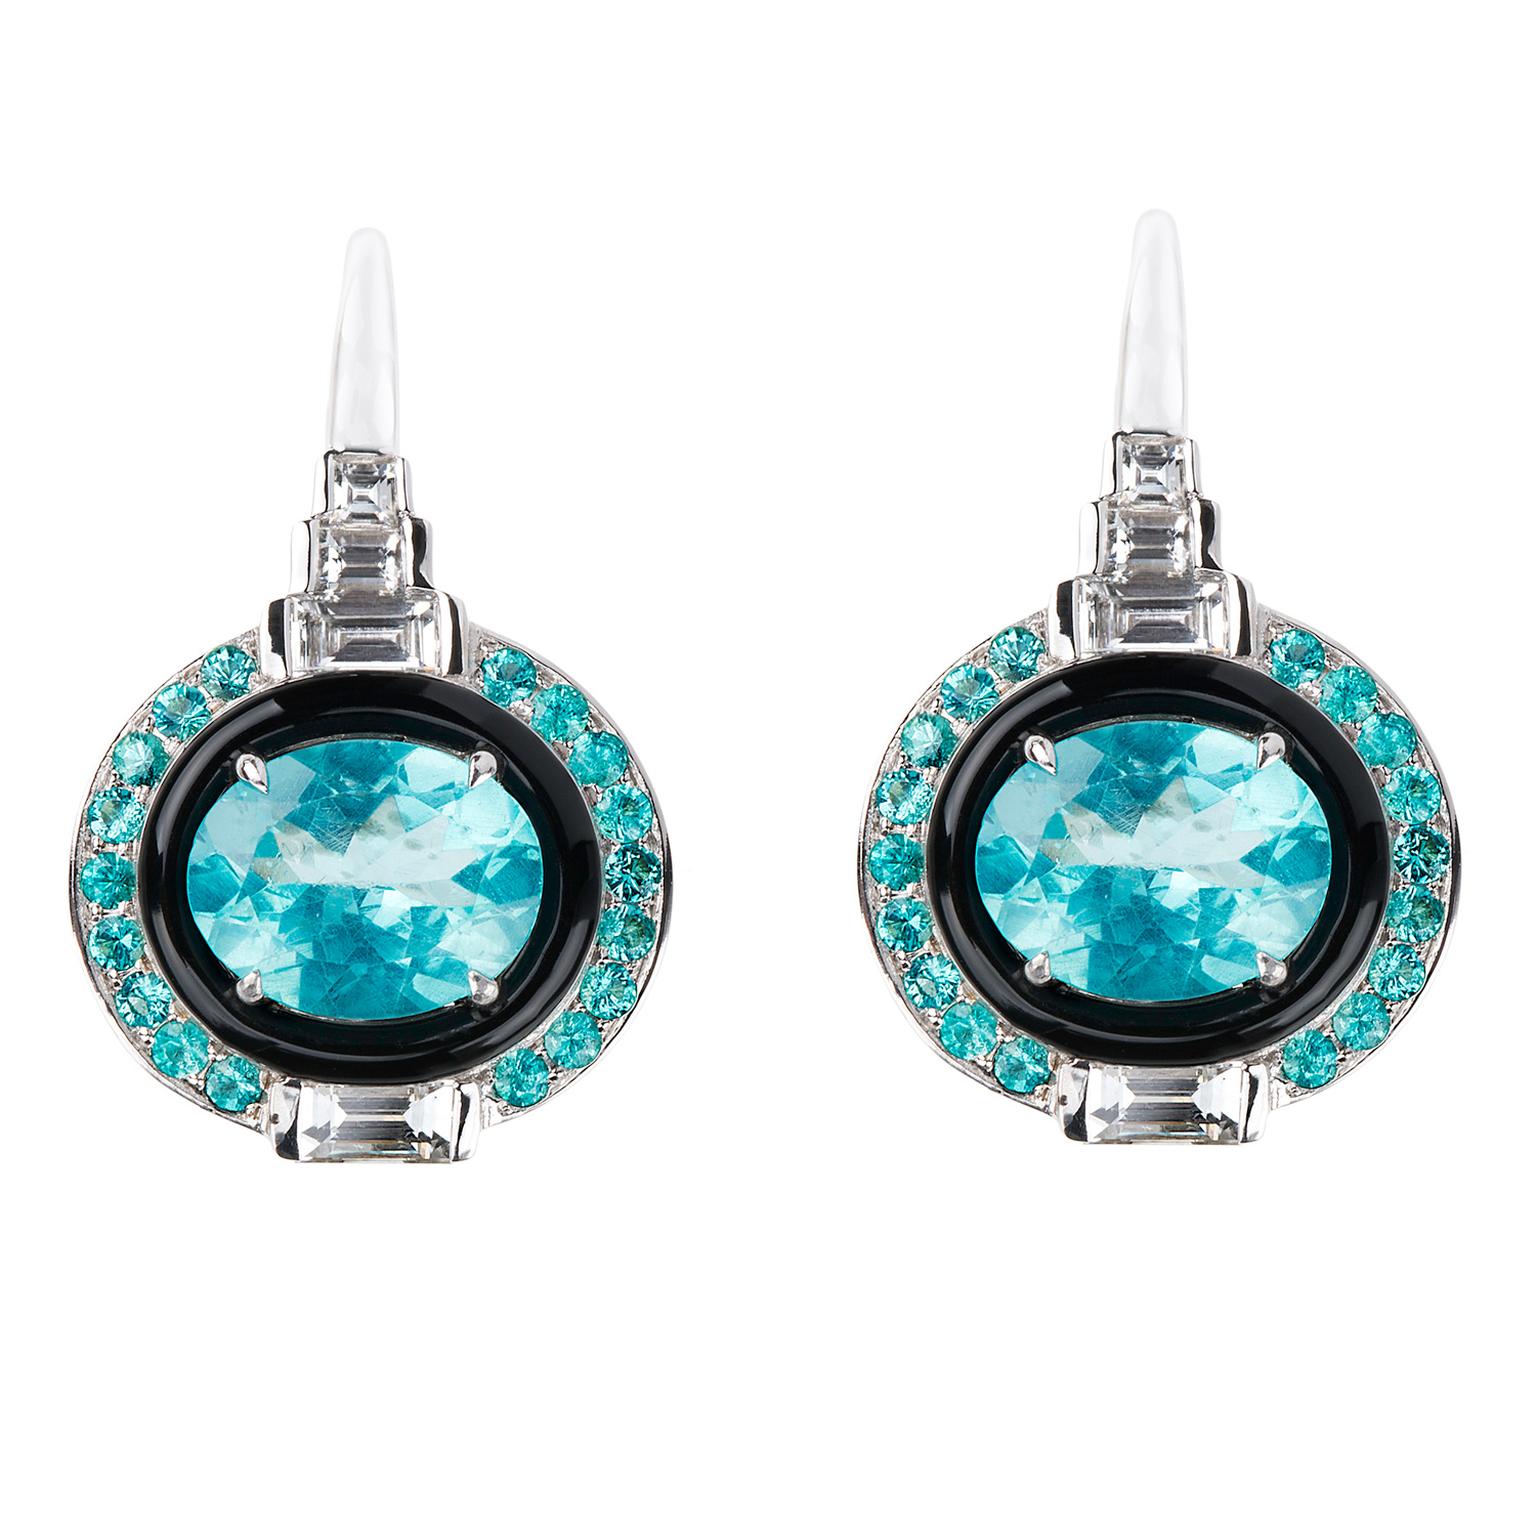 Nikos Koulis Yesterday Collection apatite earrings